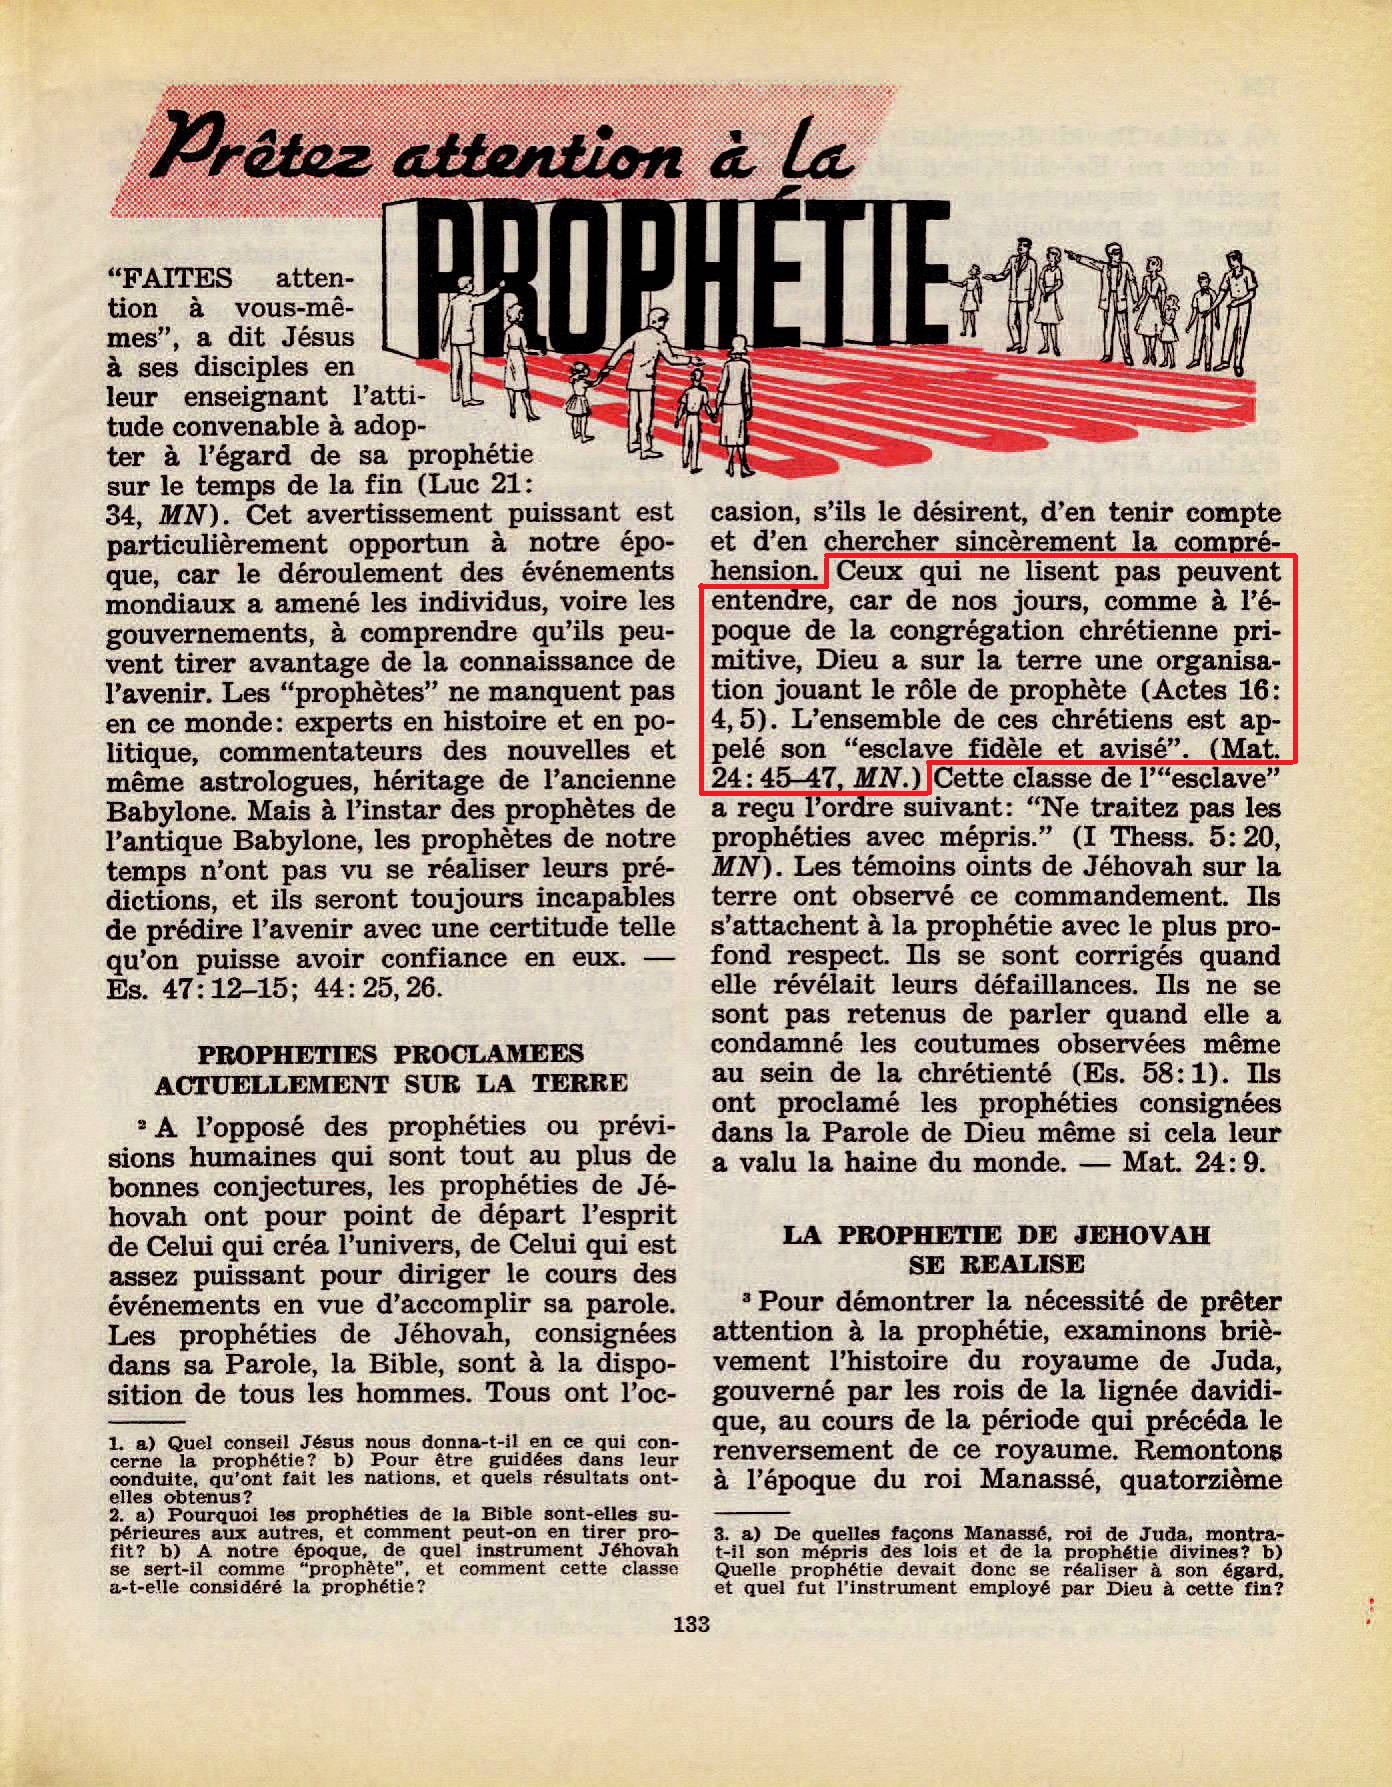 Les Témoins de Jéhovah sont de faux prophètes TG_01-03-1965-p133